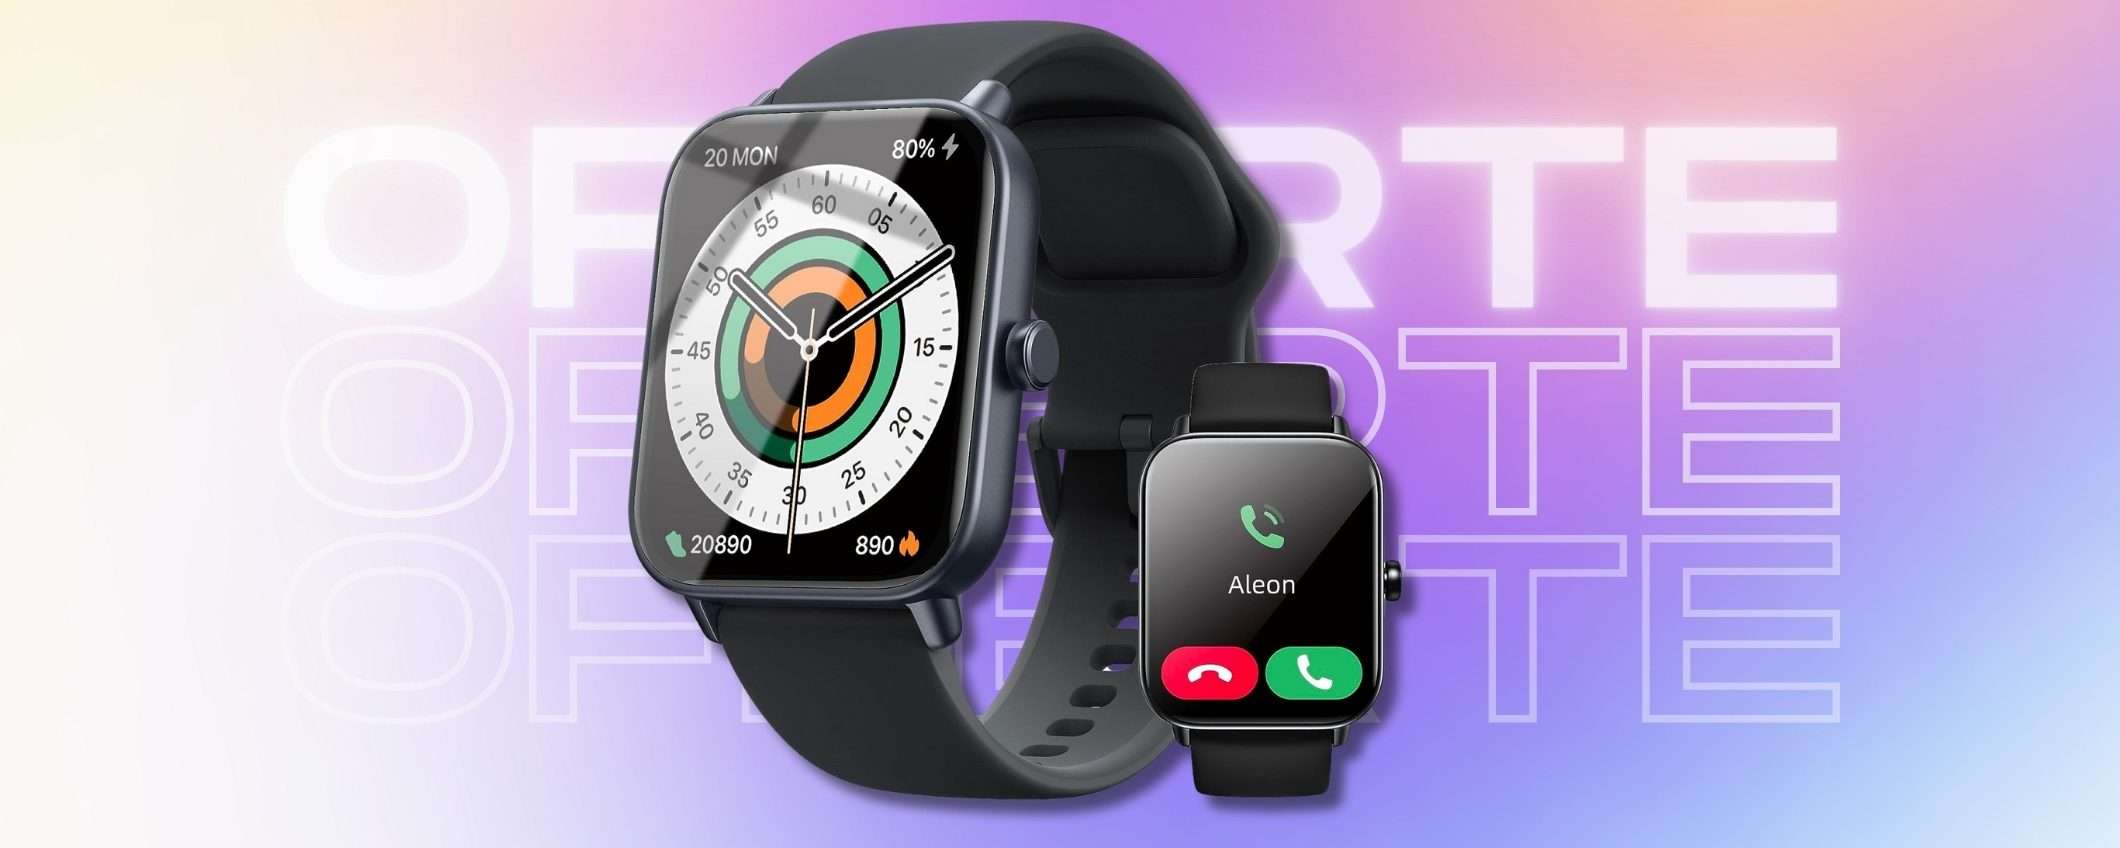 Telefonate dal polso con questo smartwatch BOMBA, 33€ su Amazon